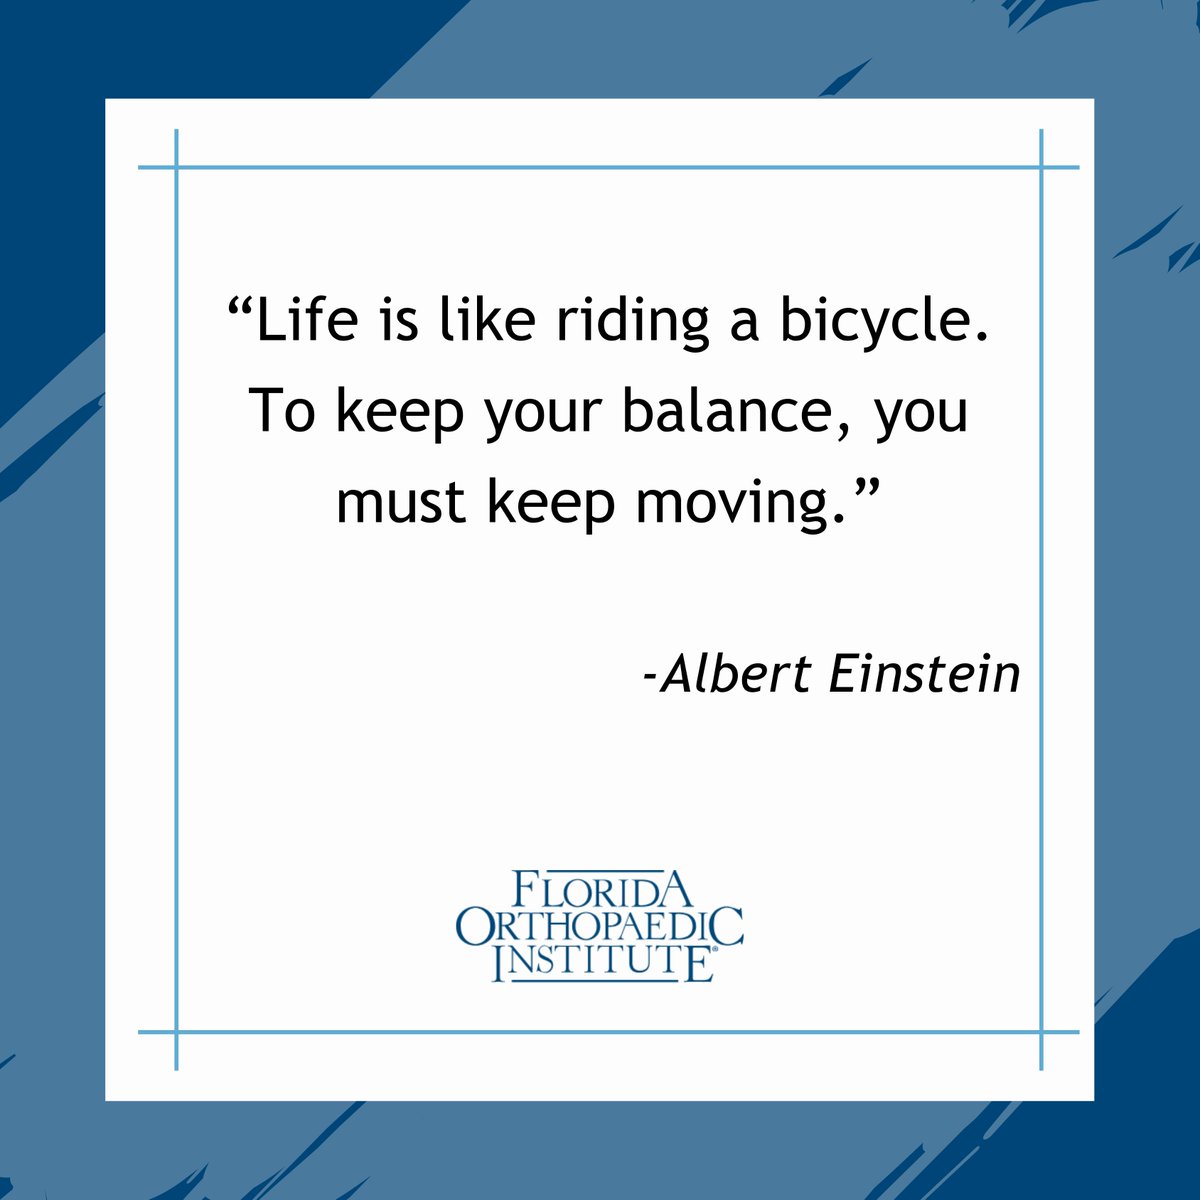 'Life is like riding a bicycle. To keep your balance, you must keep moving.' -𝘈𝘭𝘣𝘦𝘳𝘵 𝘌𝘪𝘯𝘴𝘵𝘦𝘪𝘯

#MondayMotivation #FloridaOrtho #KeepingYouActive #Monday #MotivationalMonday #MondayMindset